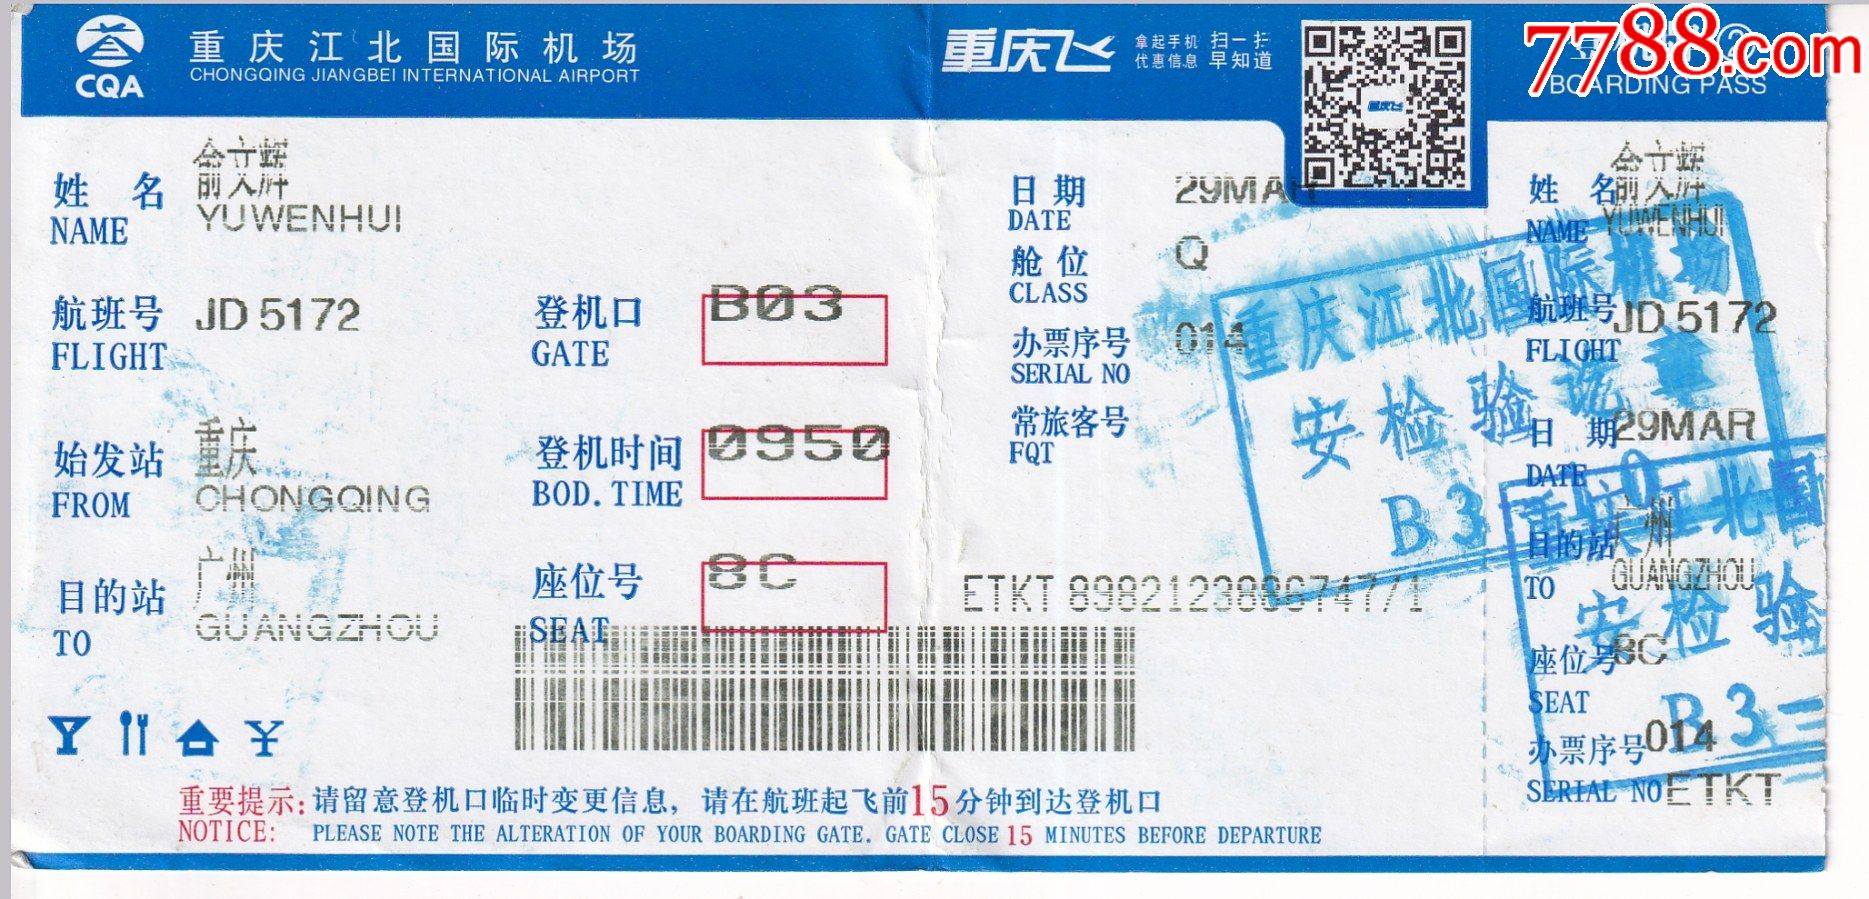 广州六盘水飞机票多少钱 广州到六盘水飞机几个小时能到